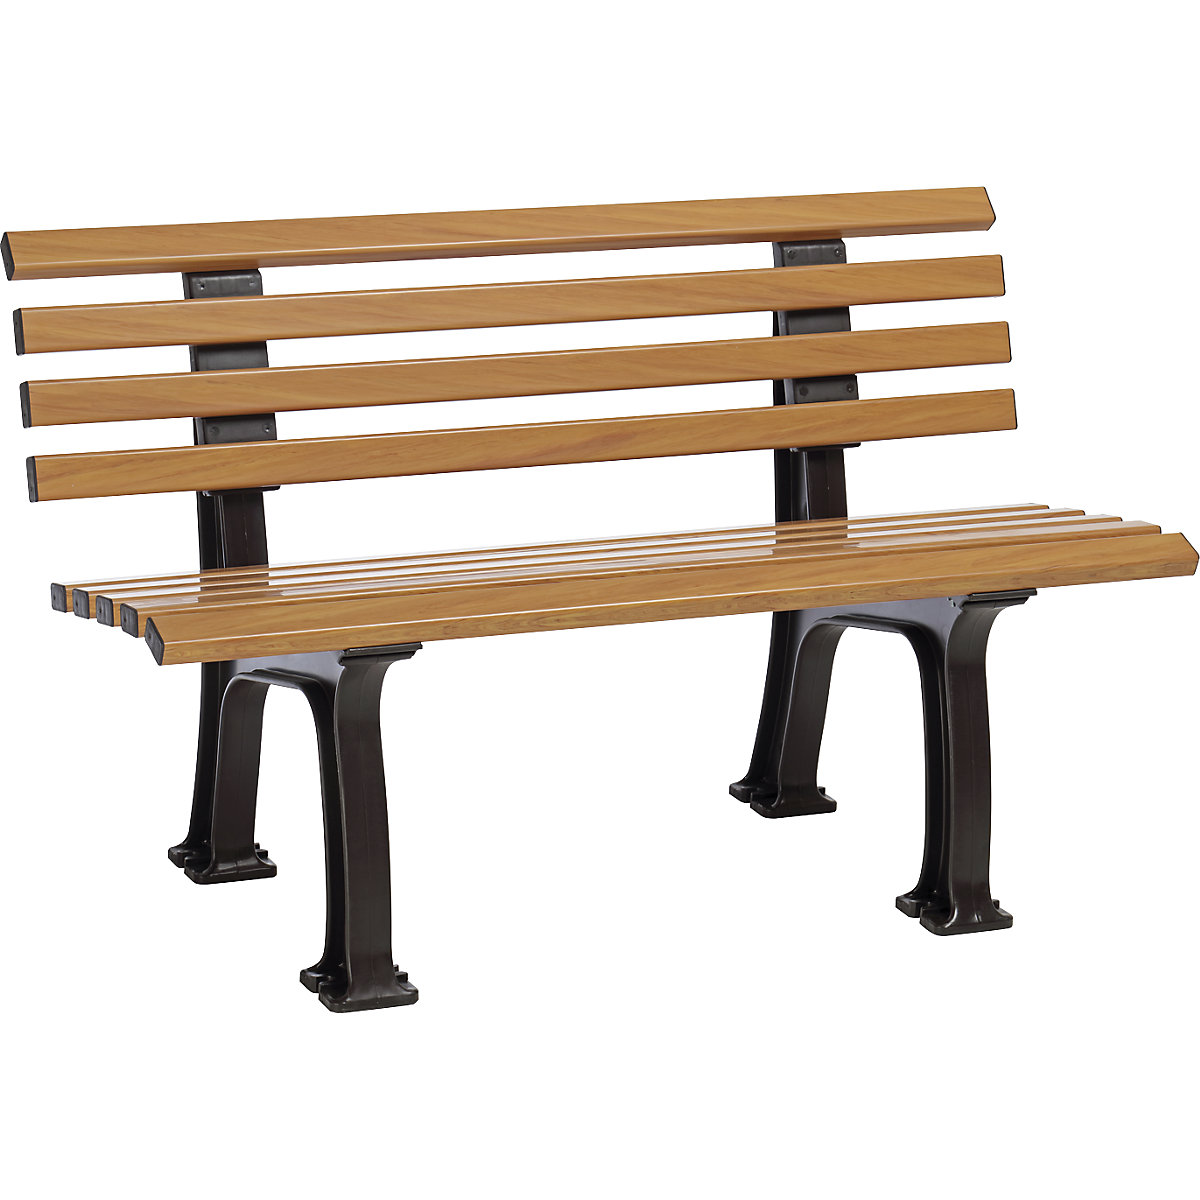 Parková lavička z plastu, s 9 lištami, šířka 1200 mm, dřevěný vzhled-9